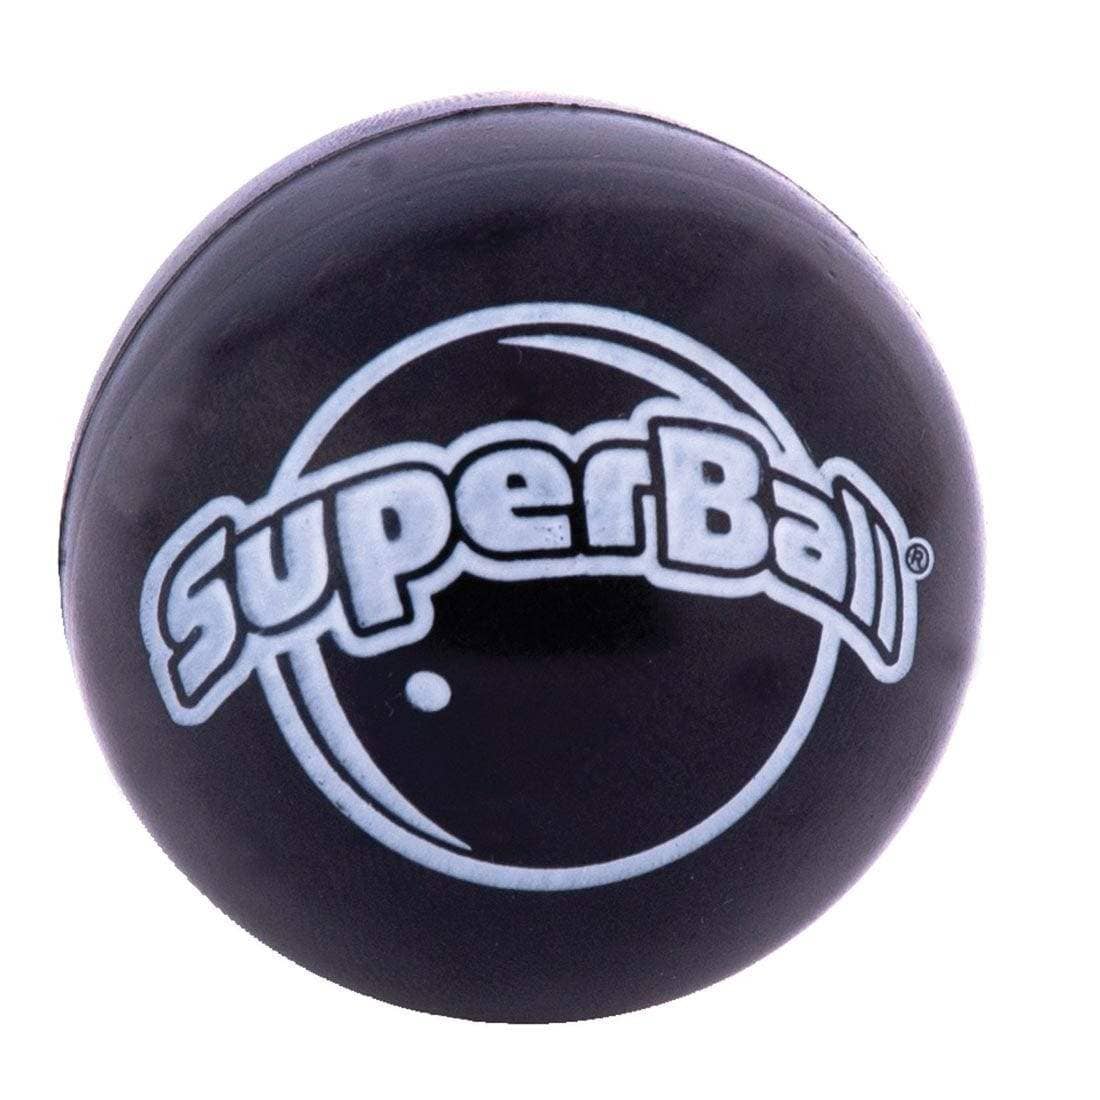 Super Ball-Kidding Around NYC